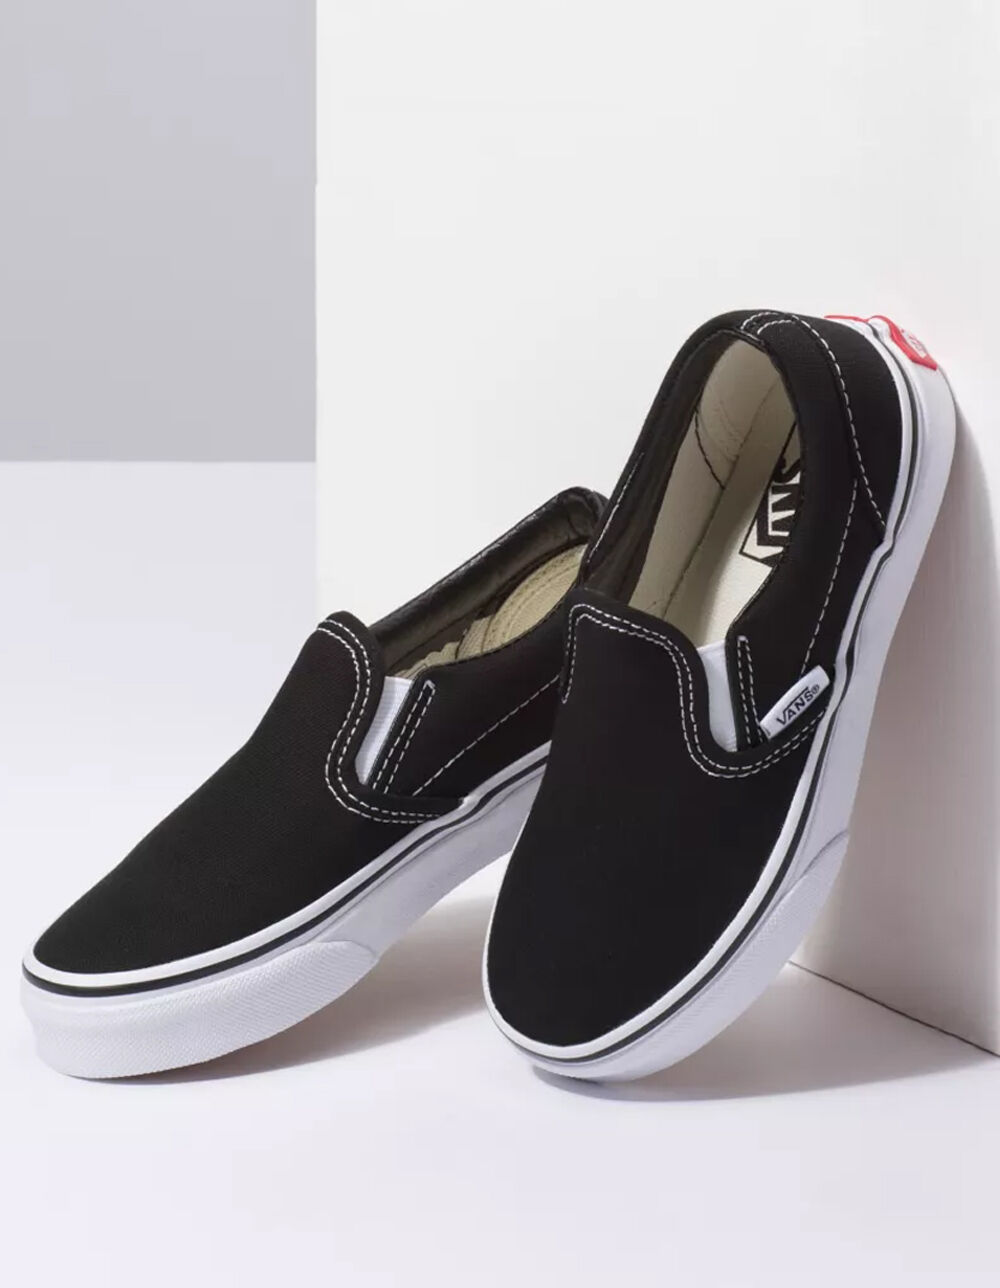 VANS Classic Slip-On Black & White Kids Shoes